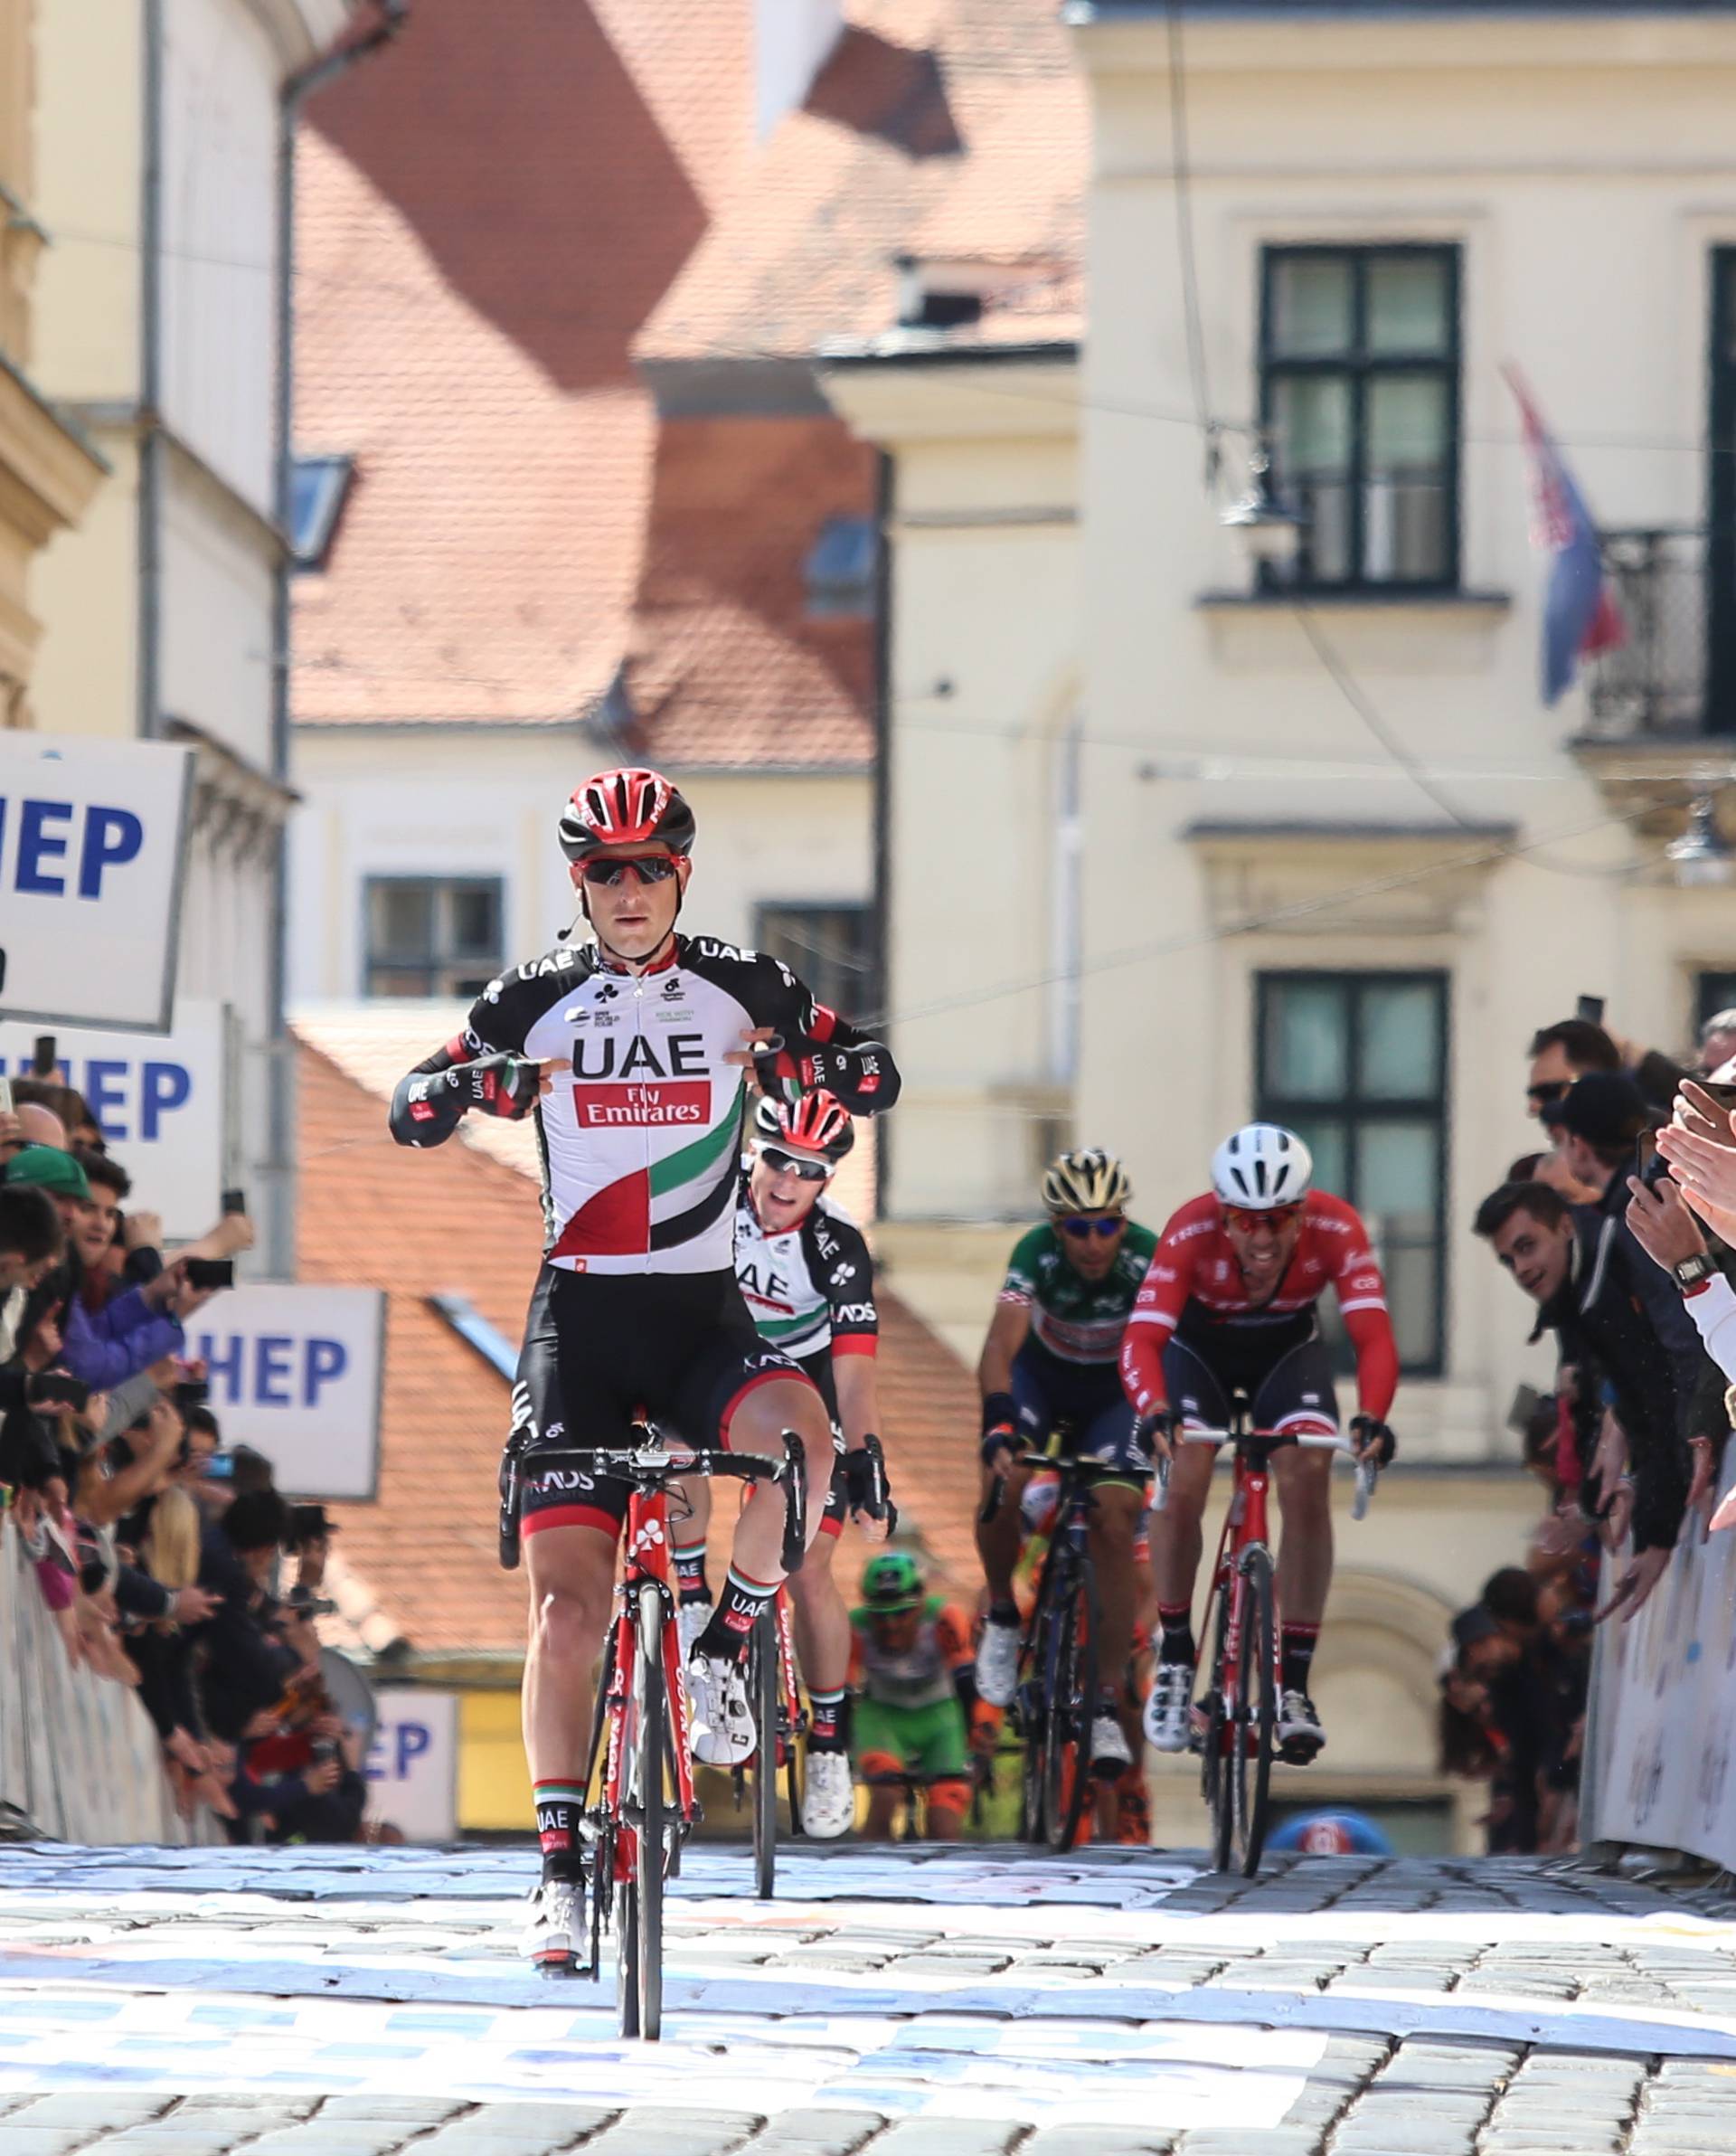 Ludi završetak Tour of Croatia: Modulu etapa, a Nibaliju naslov